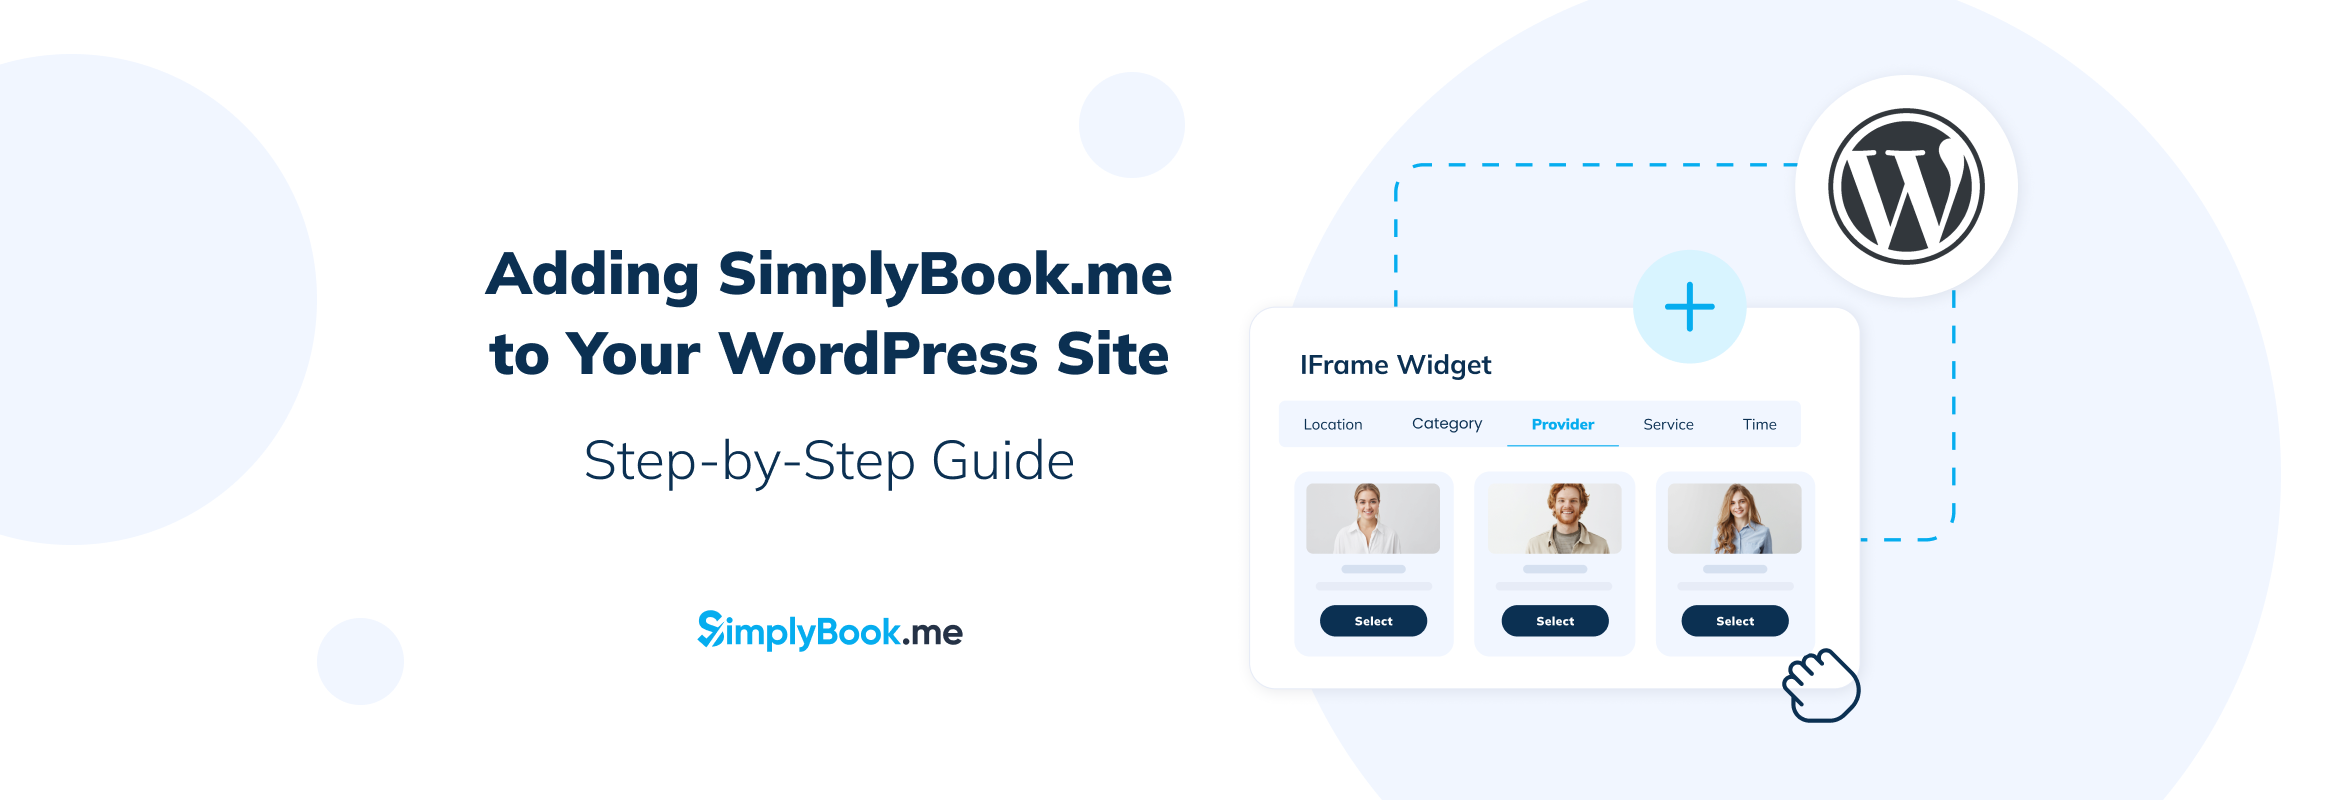 SimplyBook.me Wordpress website